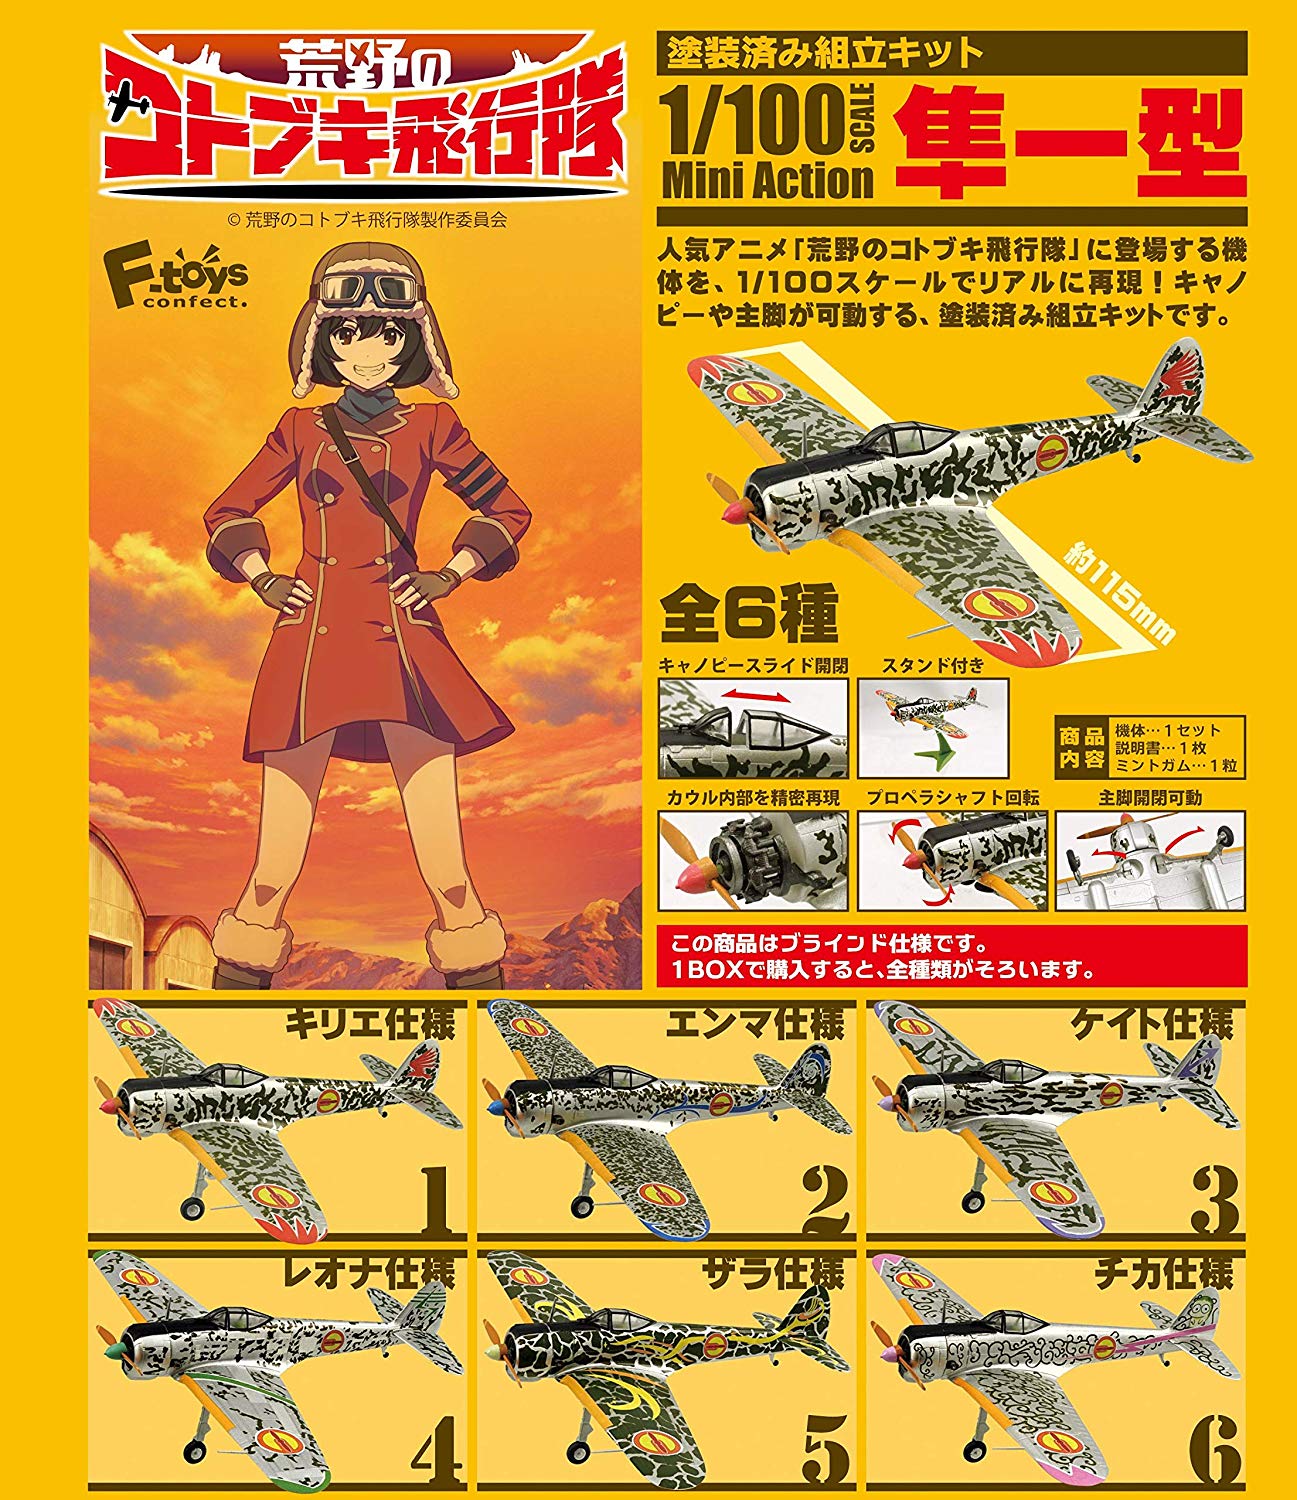 【食玩】荒野のコトブキ飛行隊『ミニアクション隼一型』食玩プラモ 6個入りBOX-018